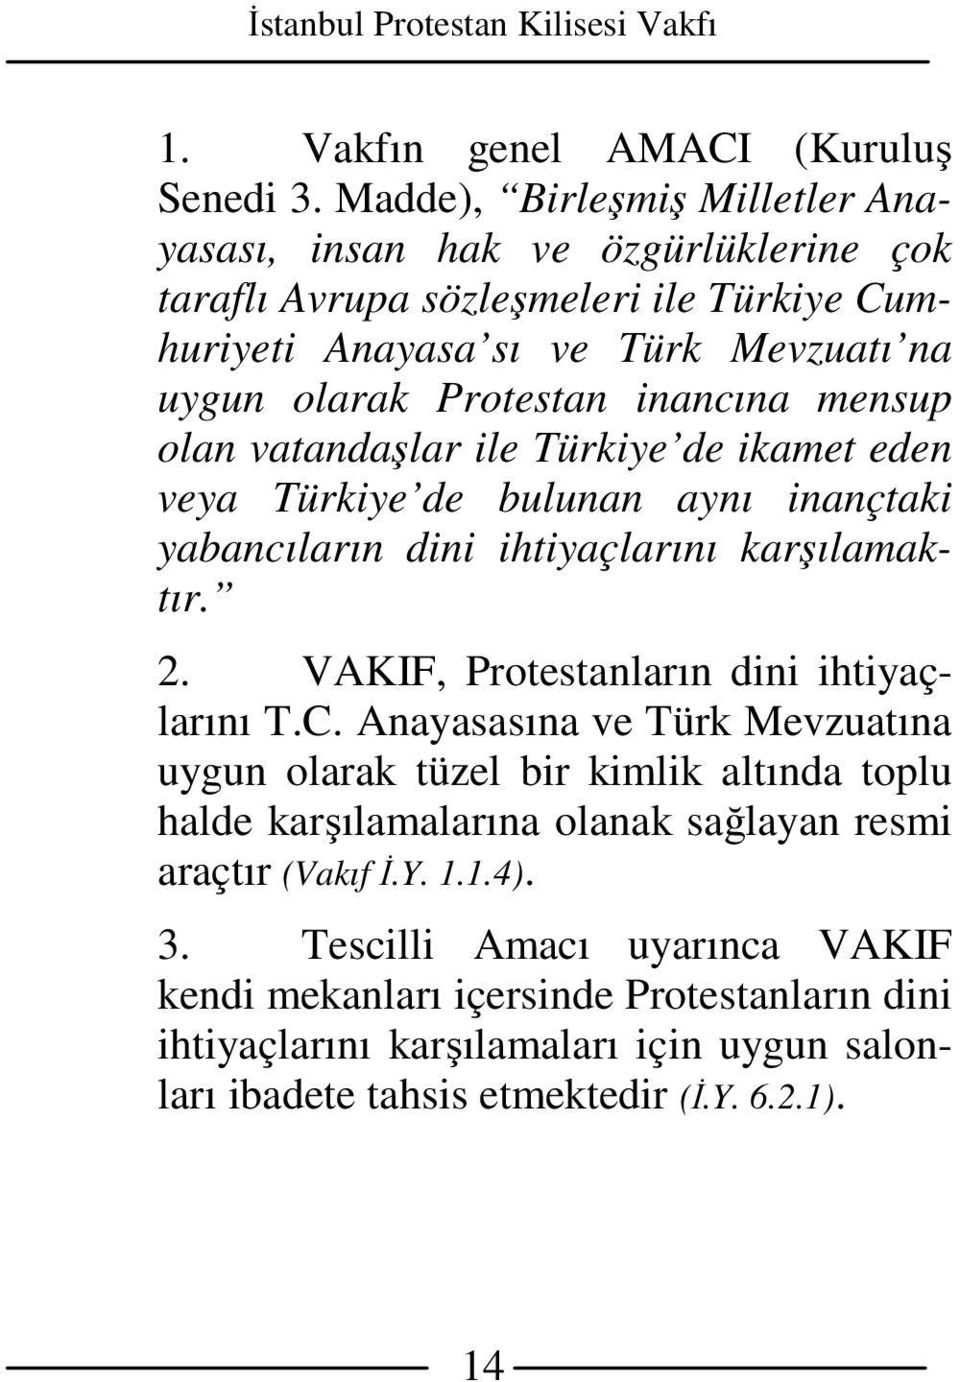 mensup olan vatandaşlar ile Türkiye de ikamet eden veya Türkiye de bulunan aynı inançtaki yabancıların dini ihtiyaçlarını karşılamaktır. 2. VAKIF, Protestanların dini ihtiyaçlarını T.C.